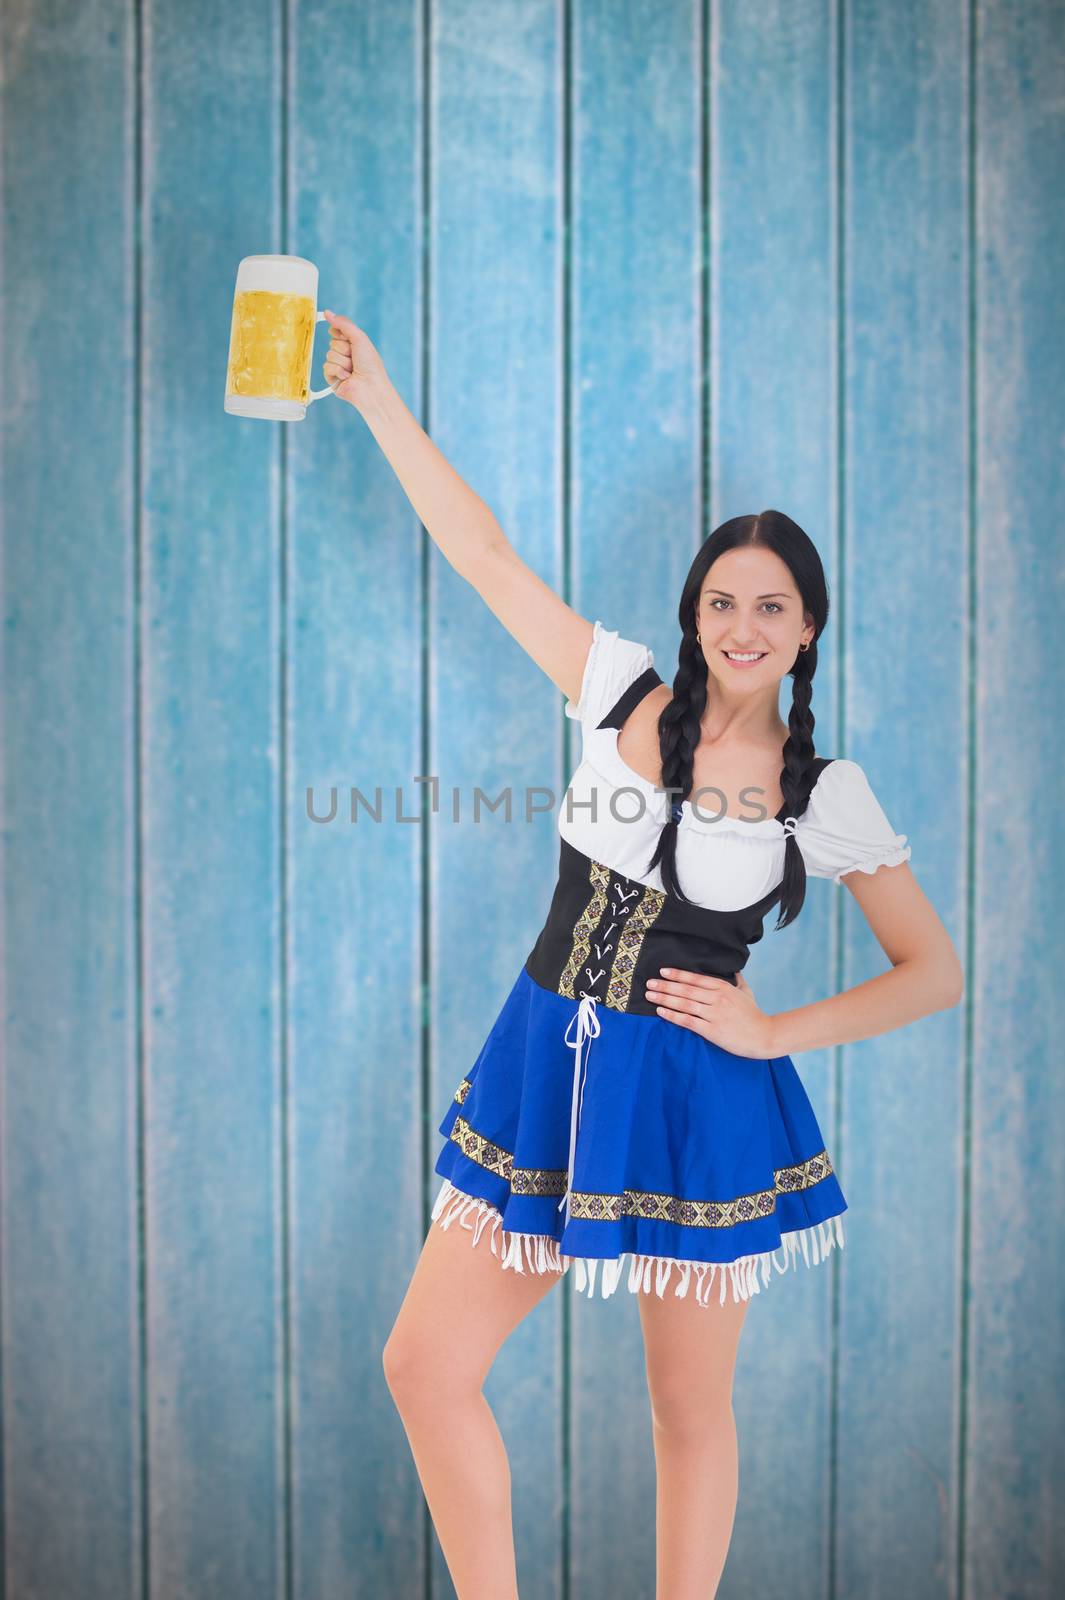 Pretty oktoberfest girl holding beer tankard against wooden planks